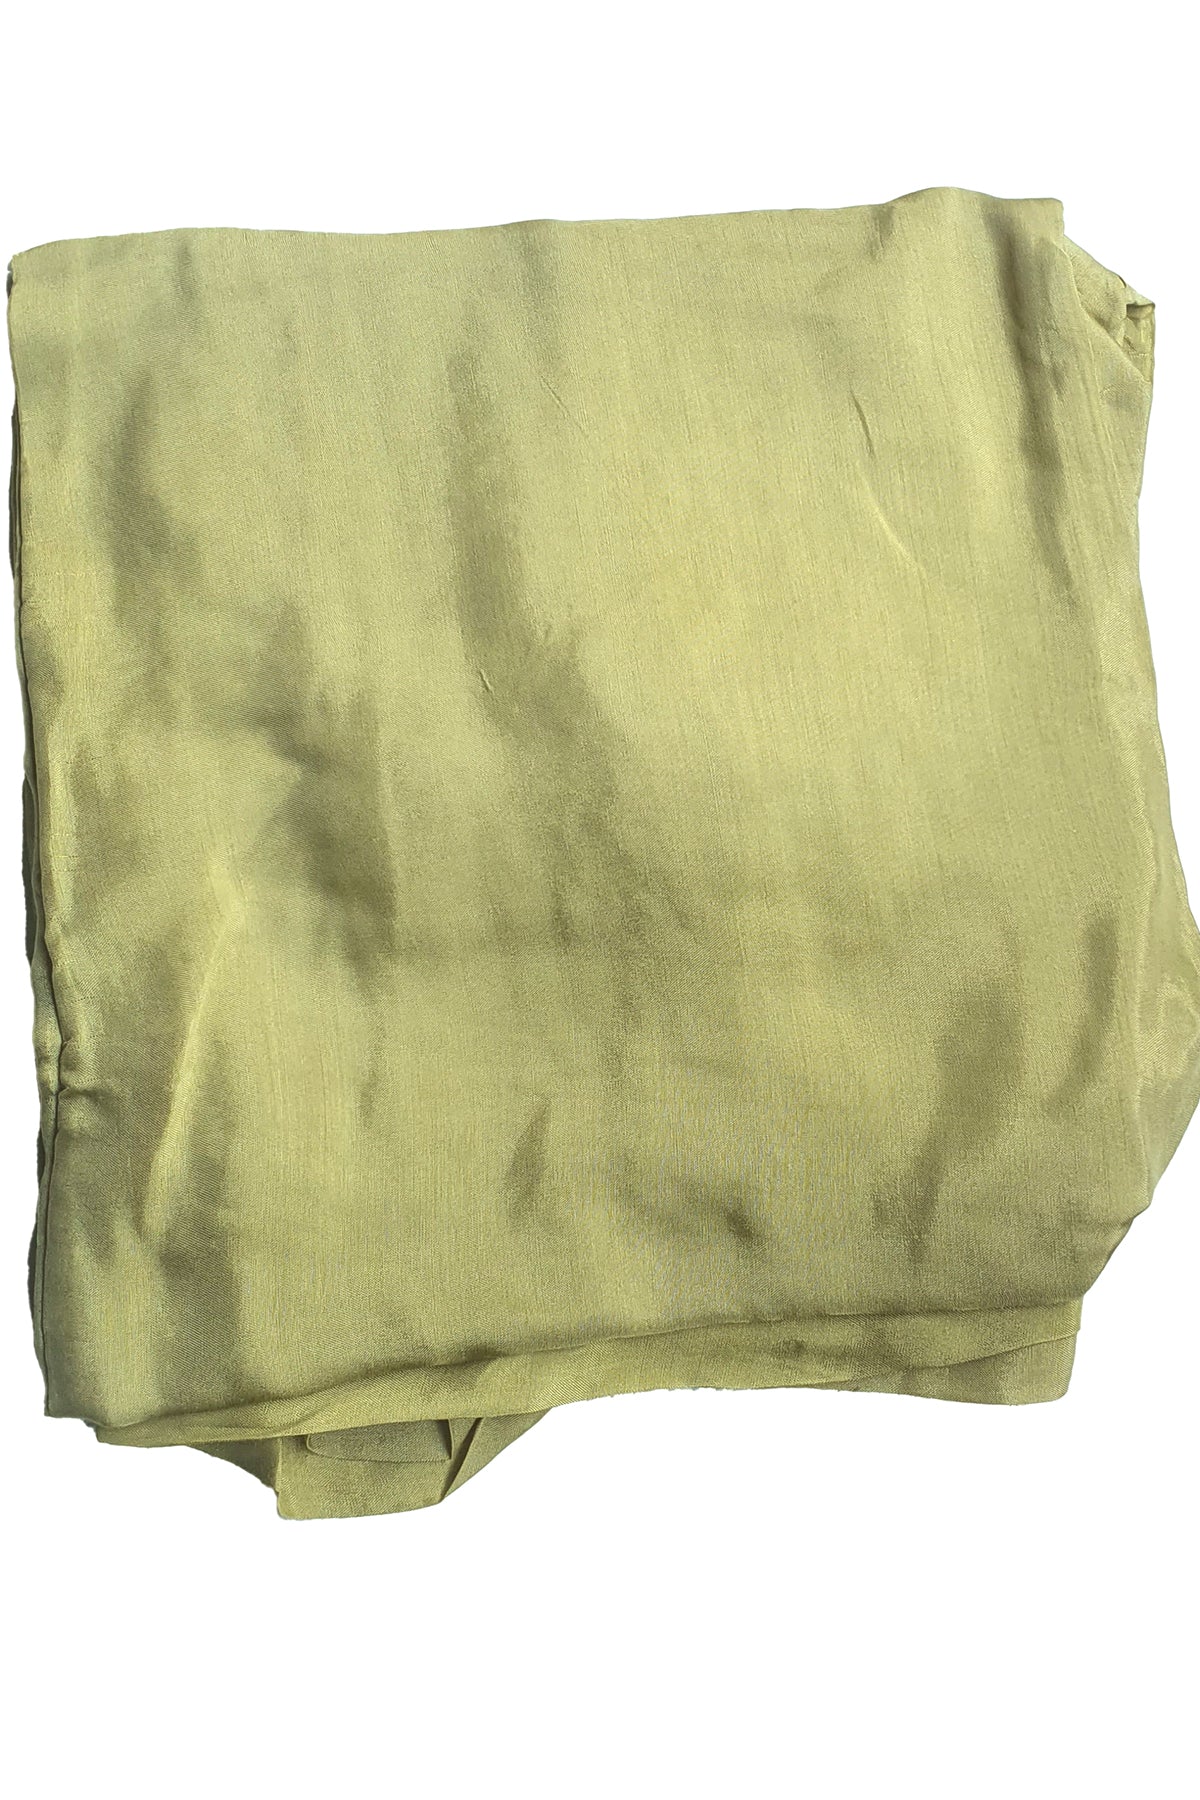 Pastel Yellow Muslin Cotton Block Printed Suit Set